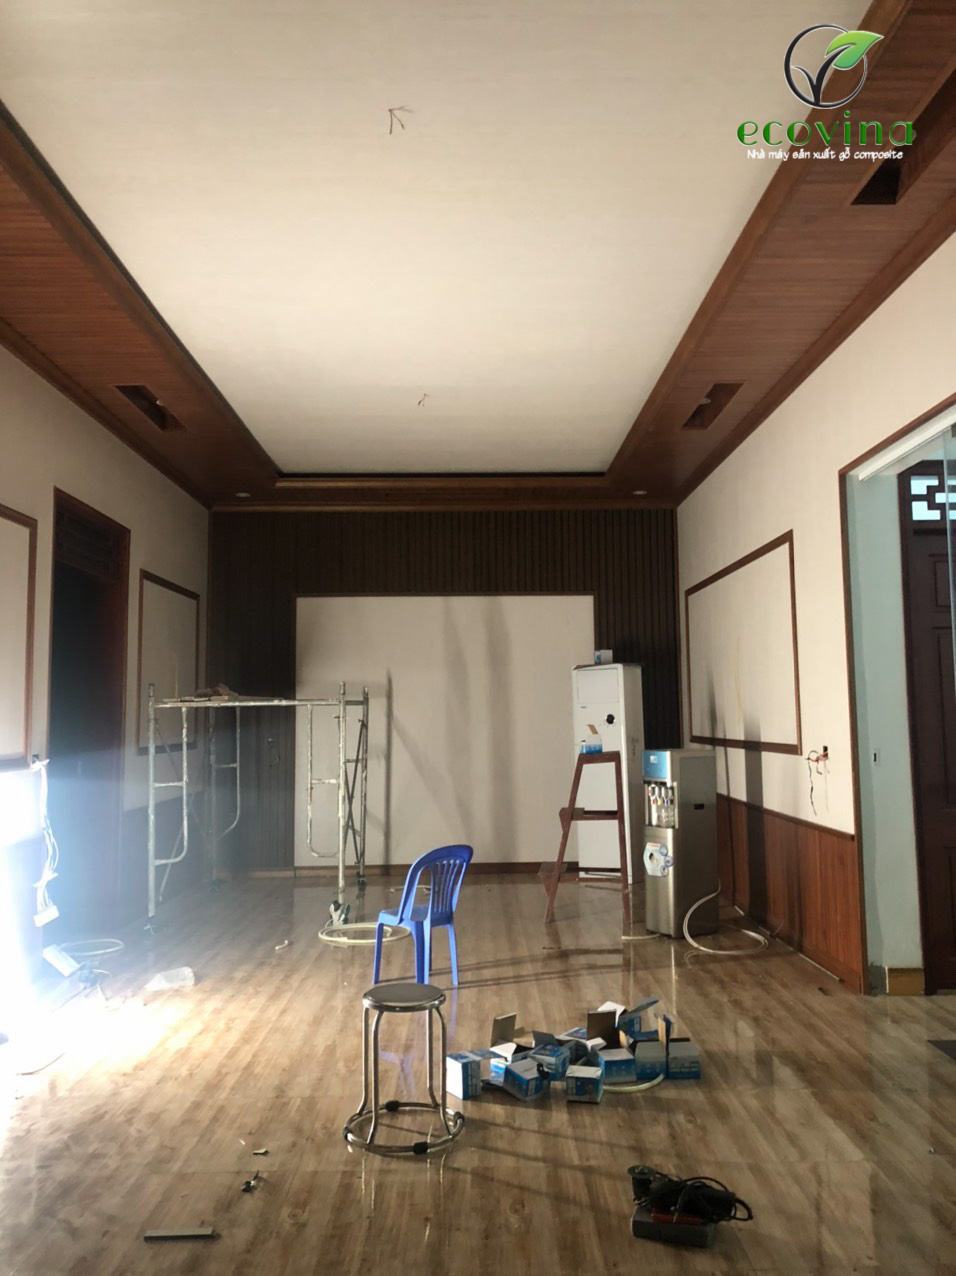 Ecovina thi công lắp đặt trần gỗ, tường gỗ tại Bắc Giang